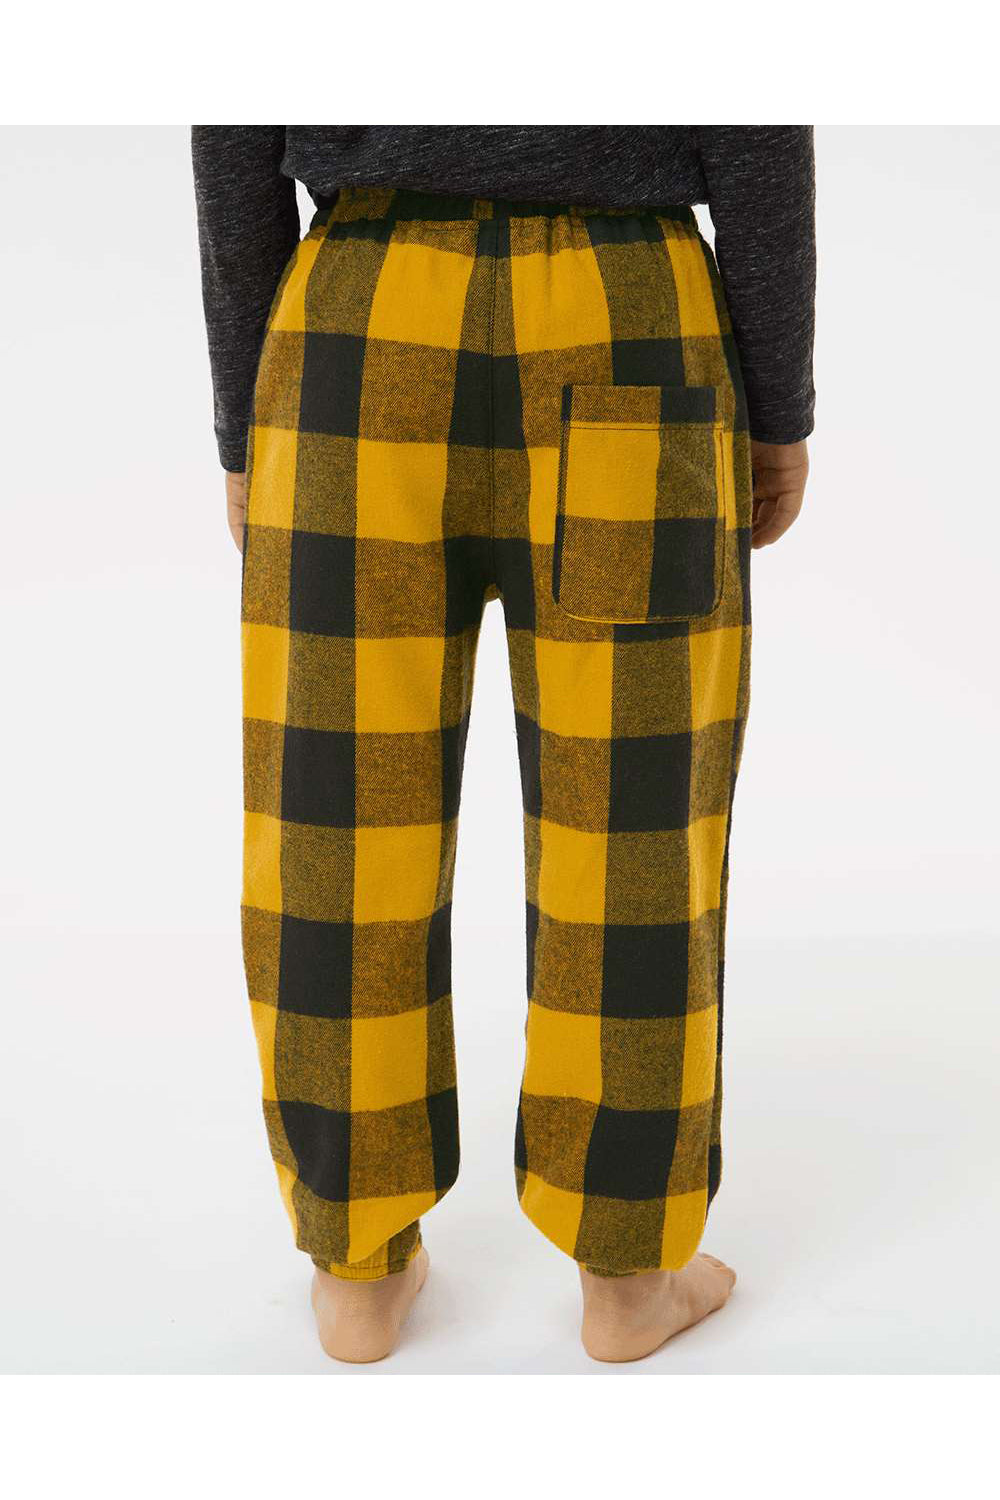 Burnside 4810 Youth Flannel Jogger Sweatpants w/ Pockets Gold/Black Model Back